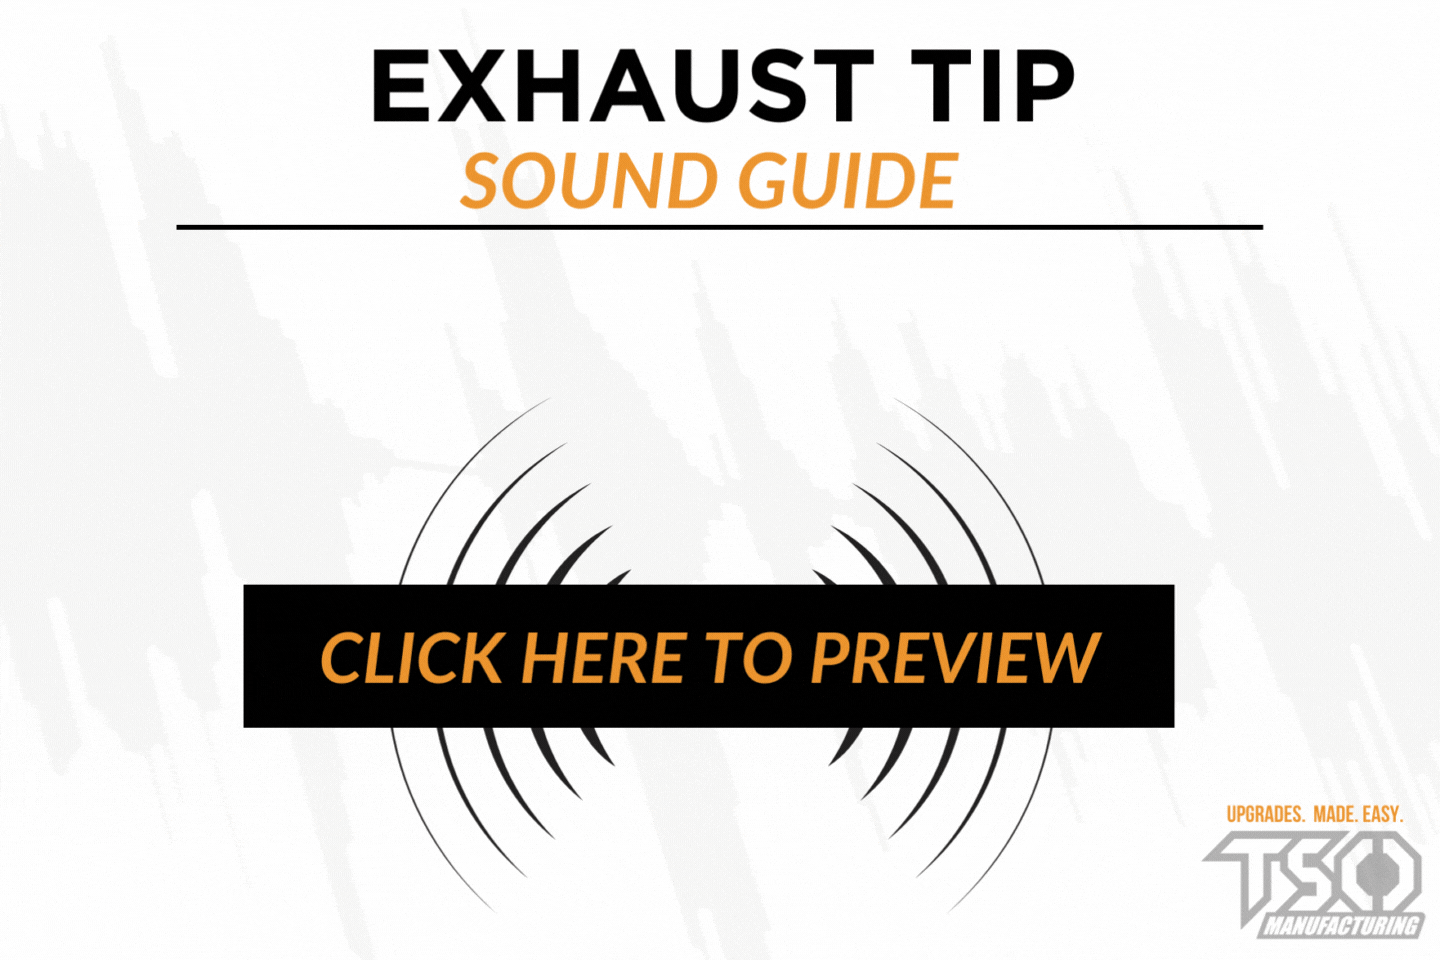 Sound Guide